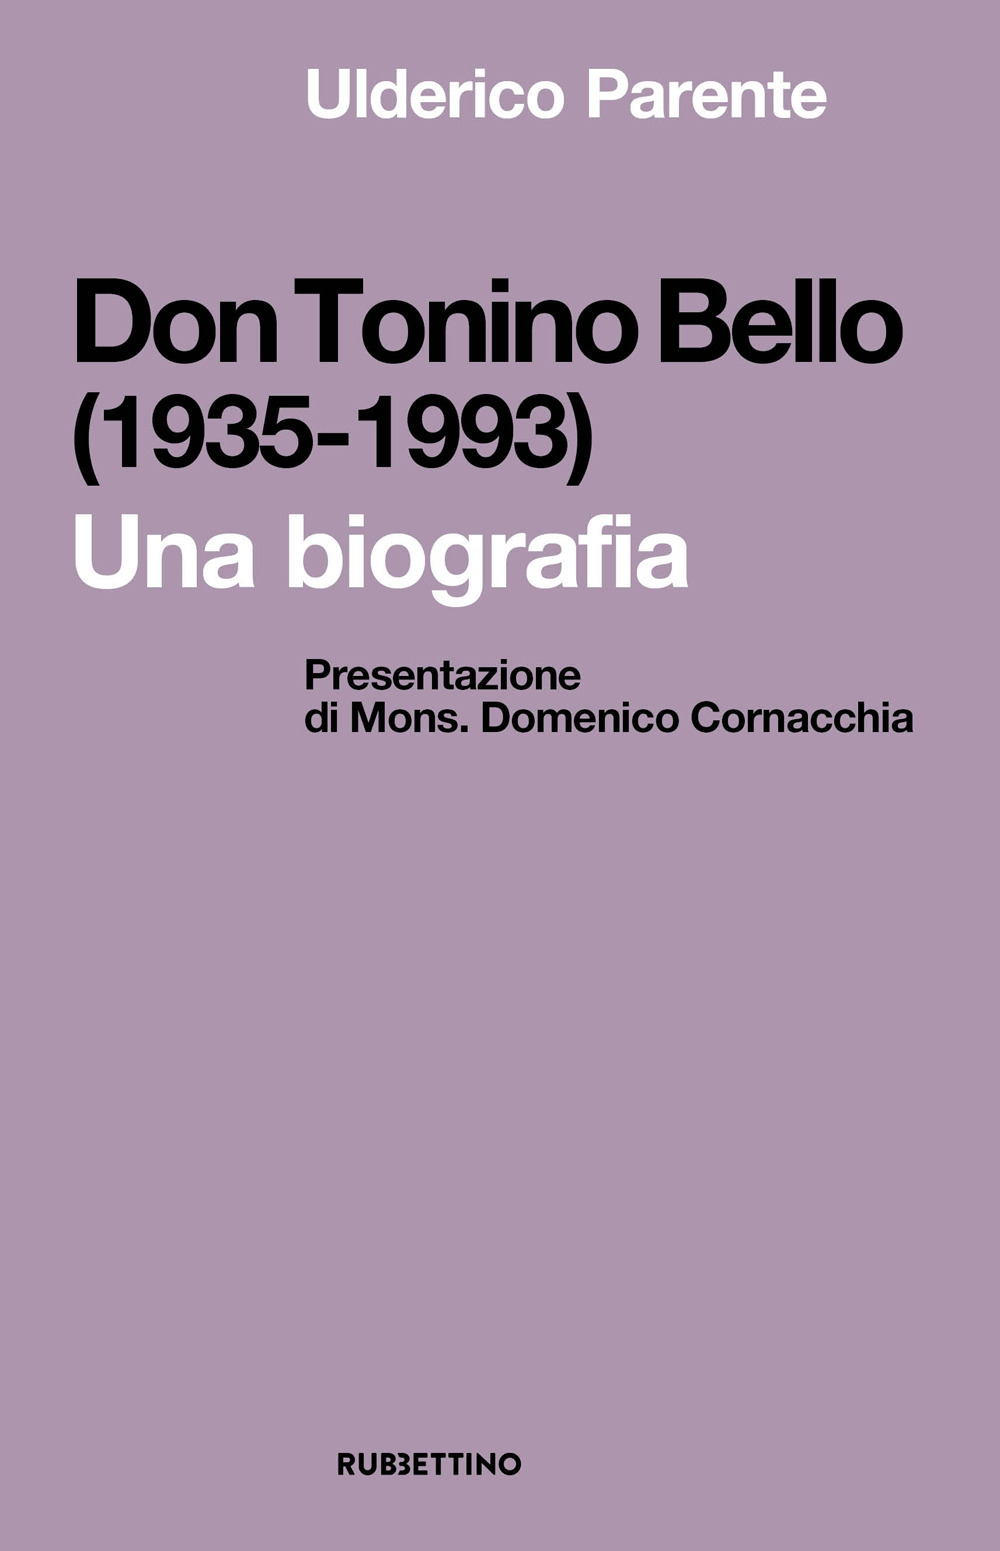 Libri Ulderico Parente - Don Tonino Bello (1935-1993). Una Biografia NUOVO SIGILLATO, EDIZIONE DEL 16/09/2022 SUBITO DISPONIBILE